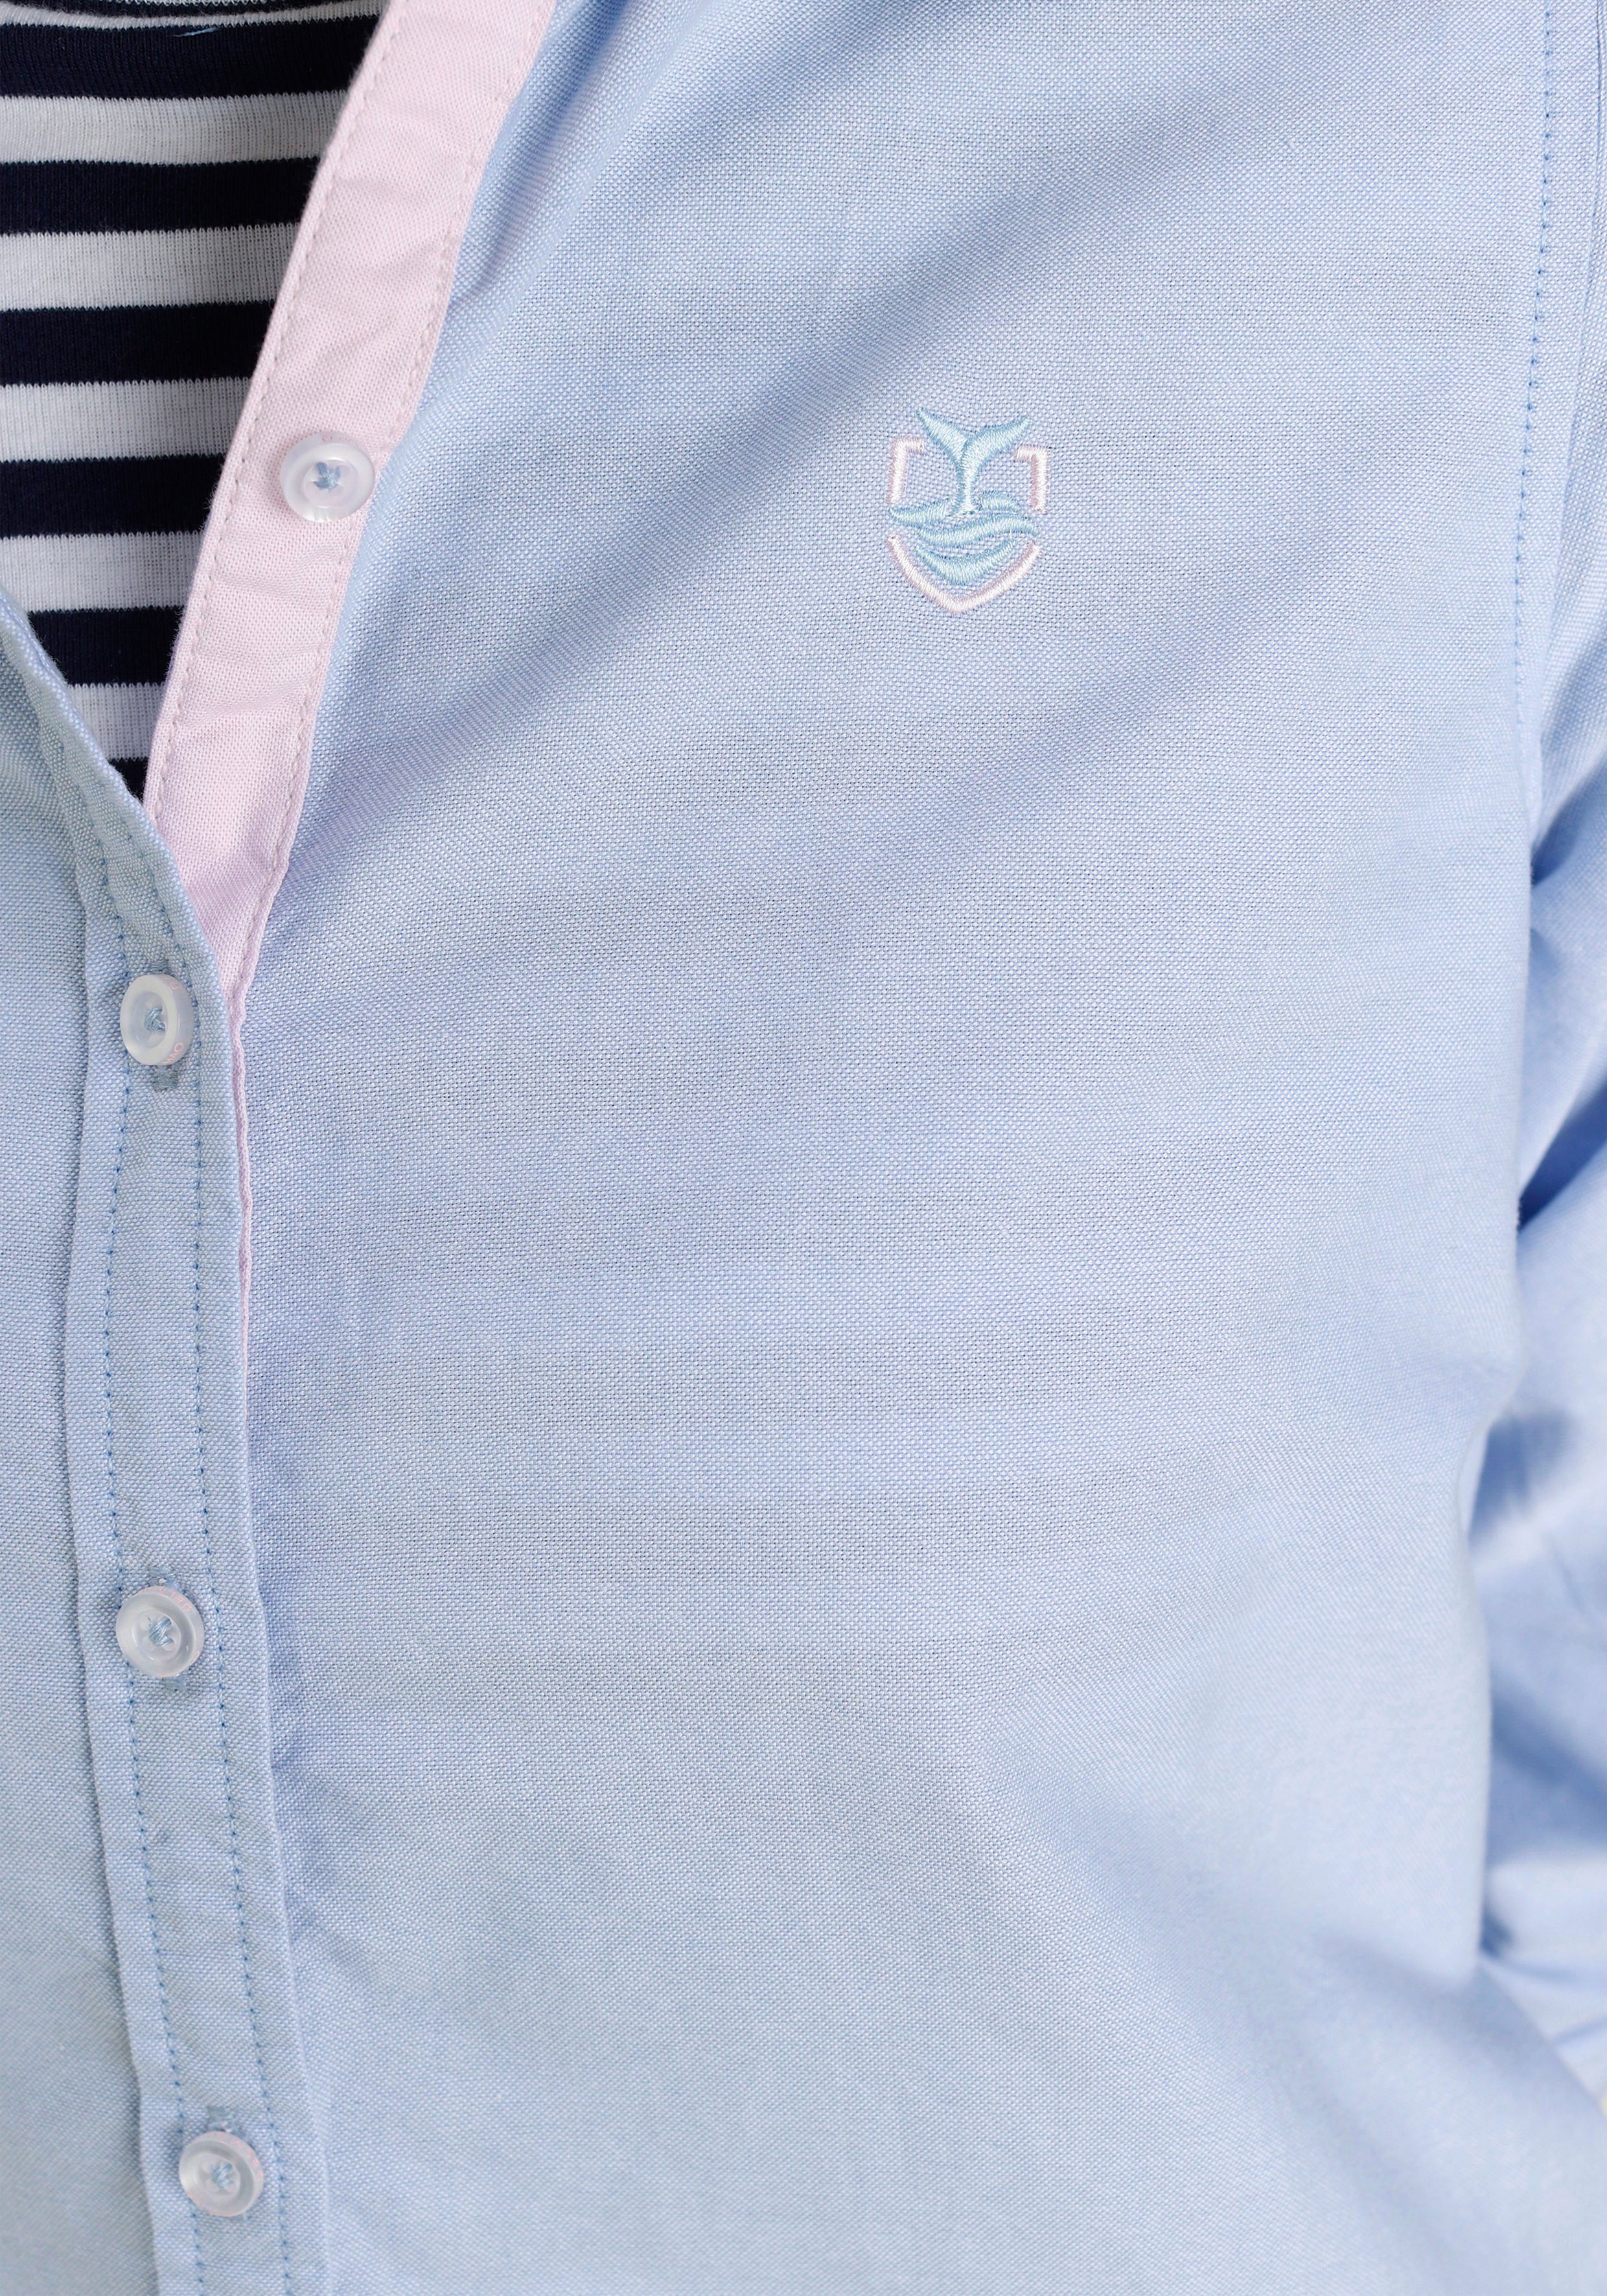 DELMAO Hemdbluse mit kleinen kontrastfarbenen - NEUE Details MARKE